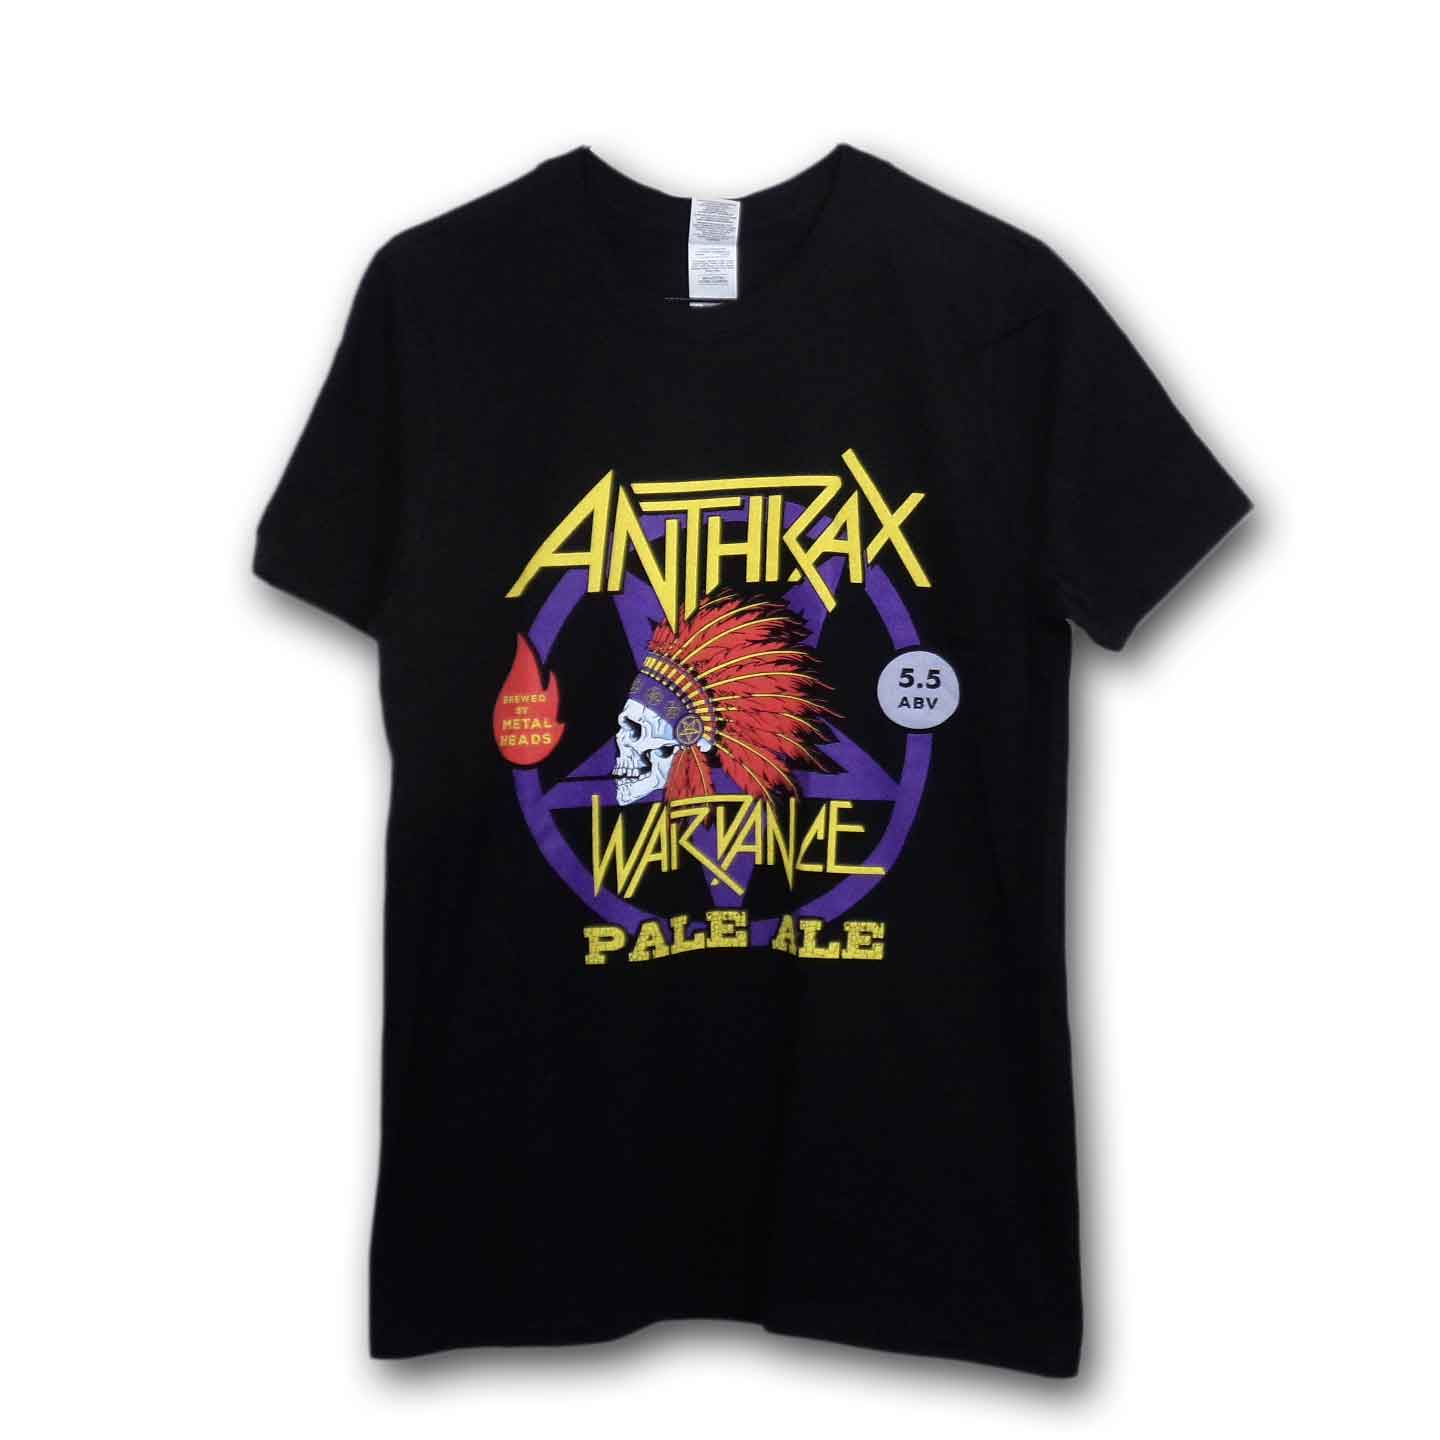 Anthrax バンドTシャツ アンスラックス Wardance Pale Ale World Tour 